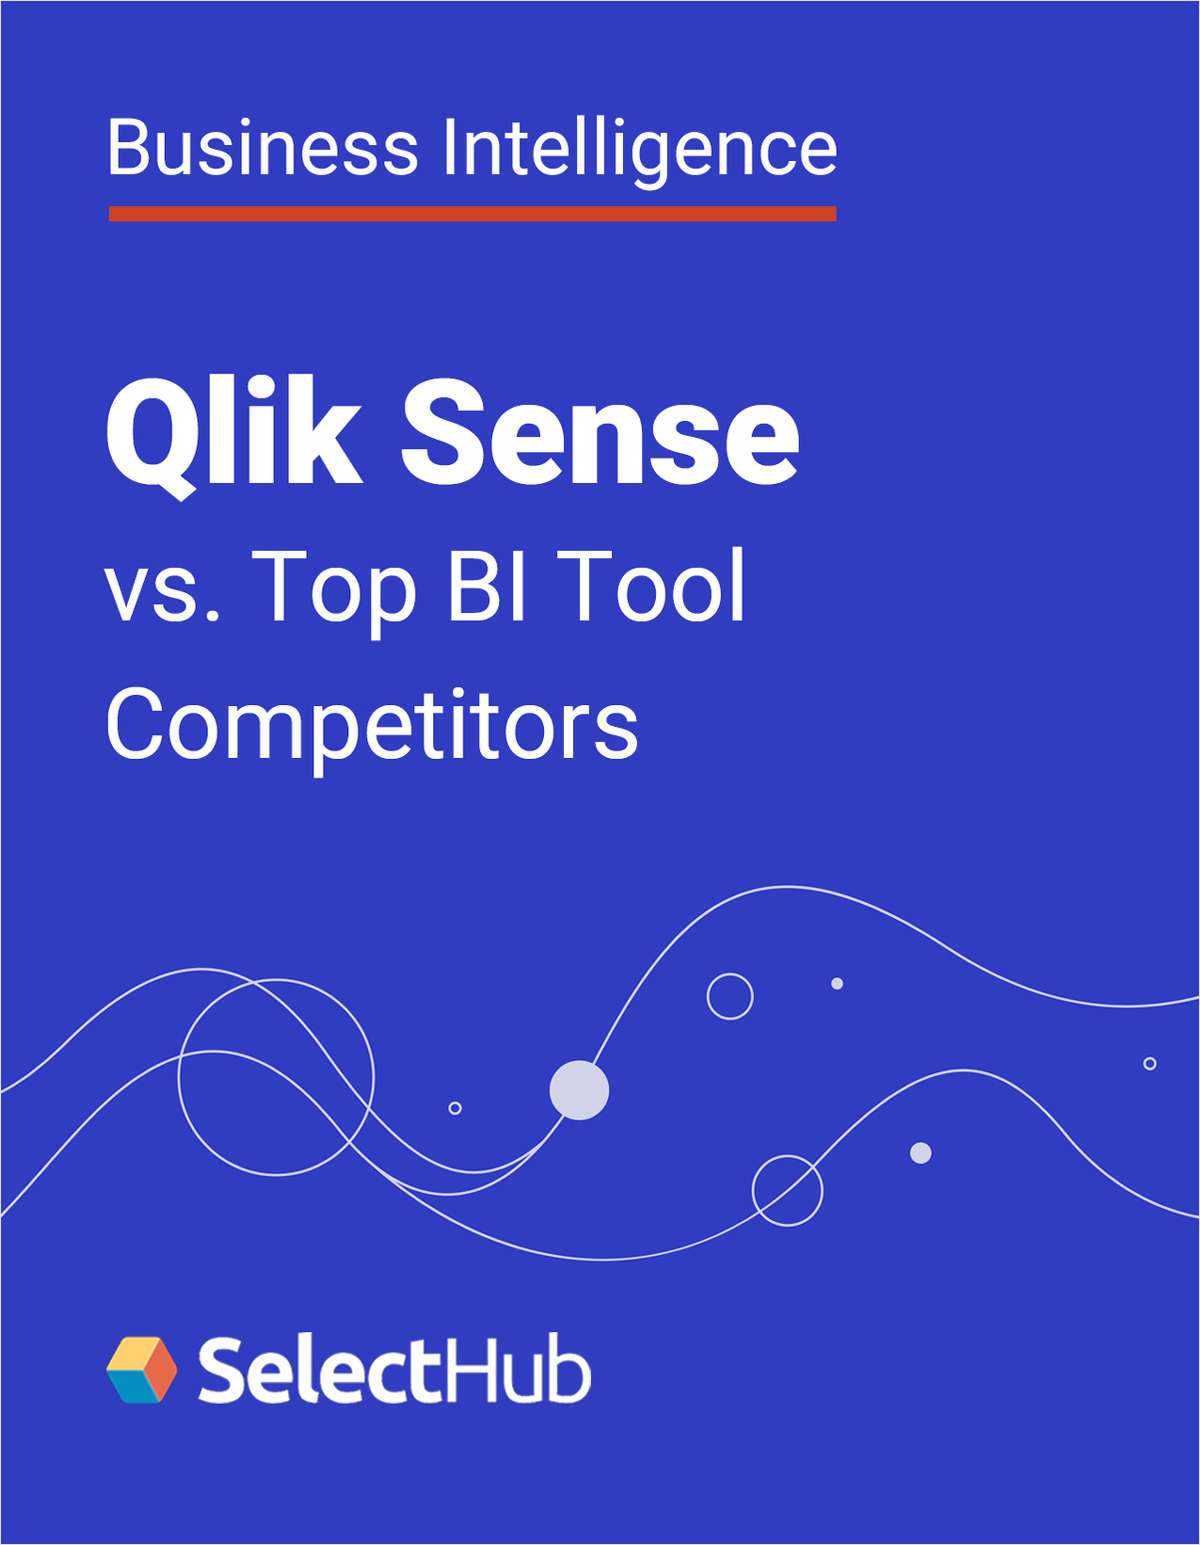 Qlik Sense vs. Top BI Software Tool Competitors: Expert Analysis & Recommendations